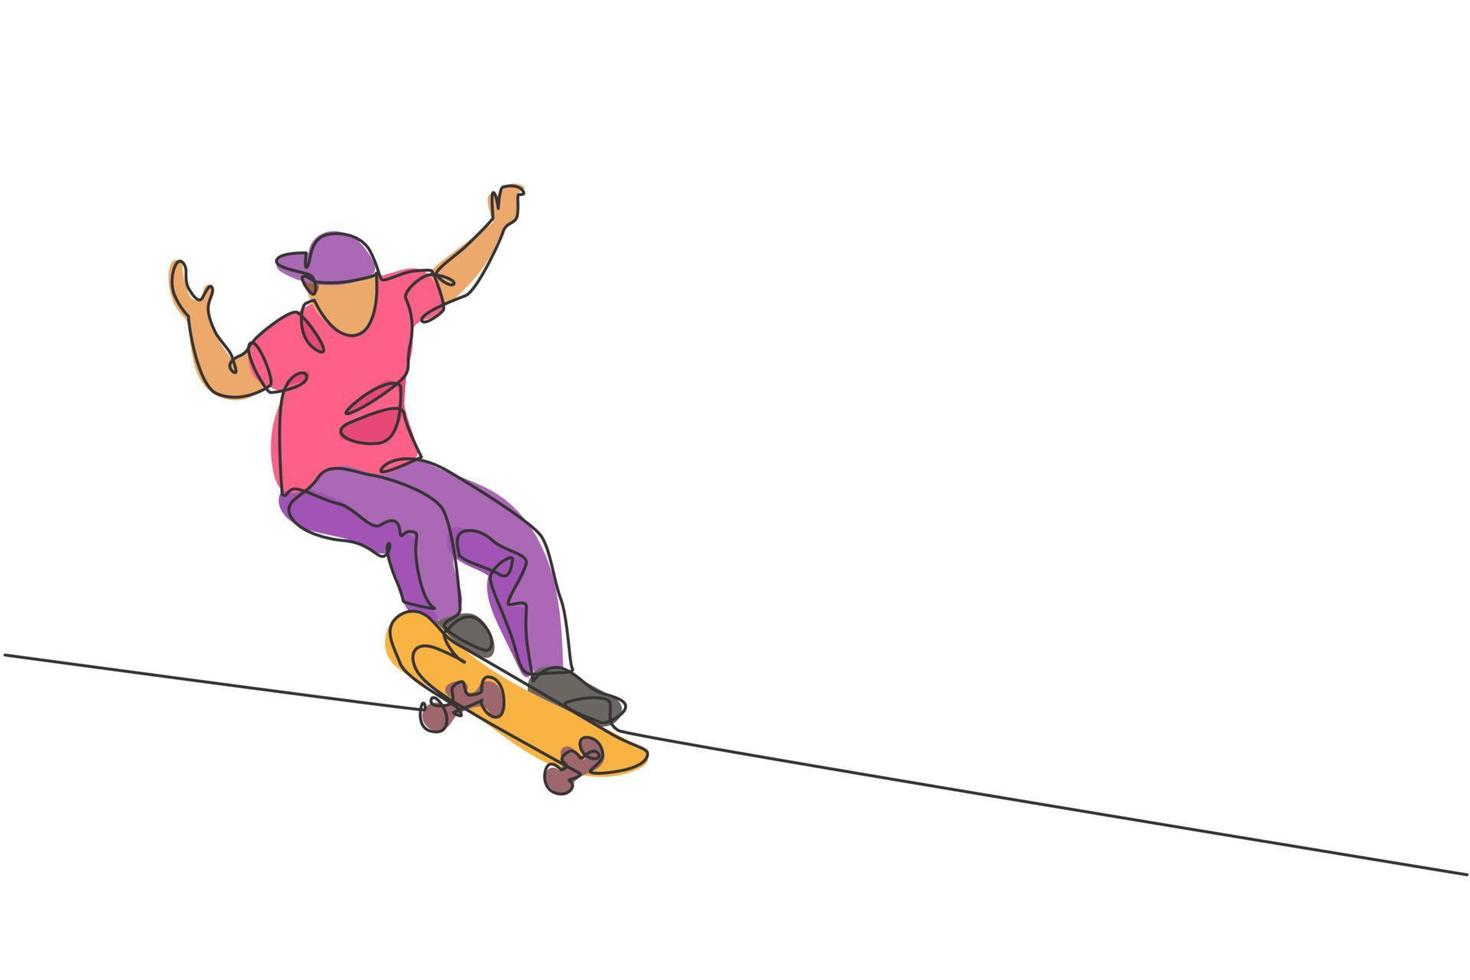 disegno a linea continua singola di un giovane skateboarder cool che cavalca skate e esegue trick di salto nello skate park. praticando il concetto di sport all'aria aperta. illustrazione vettoriale di disegno di una linea alla moda